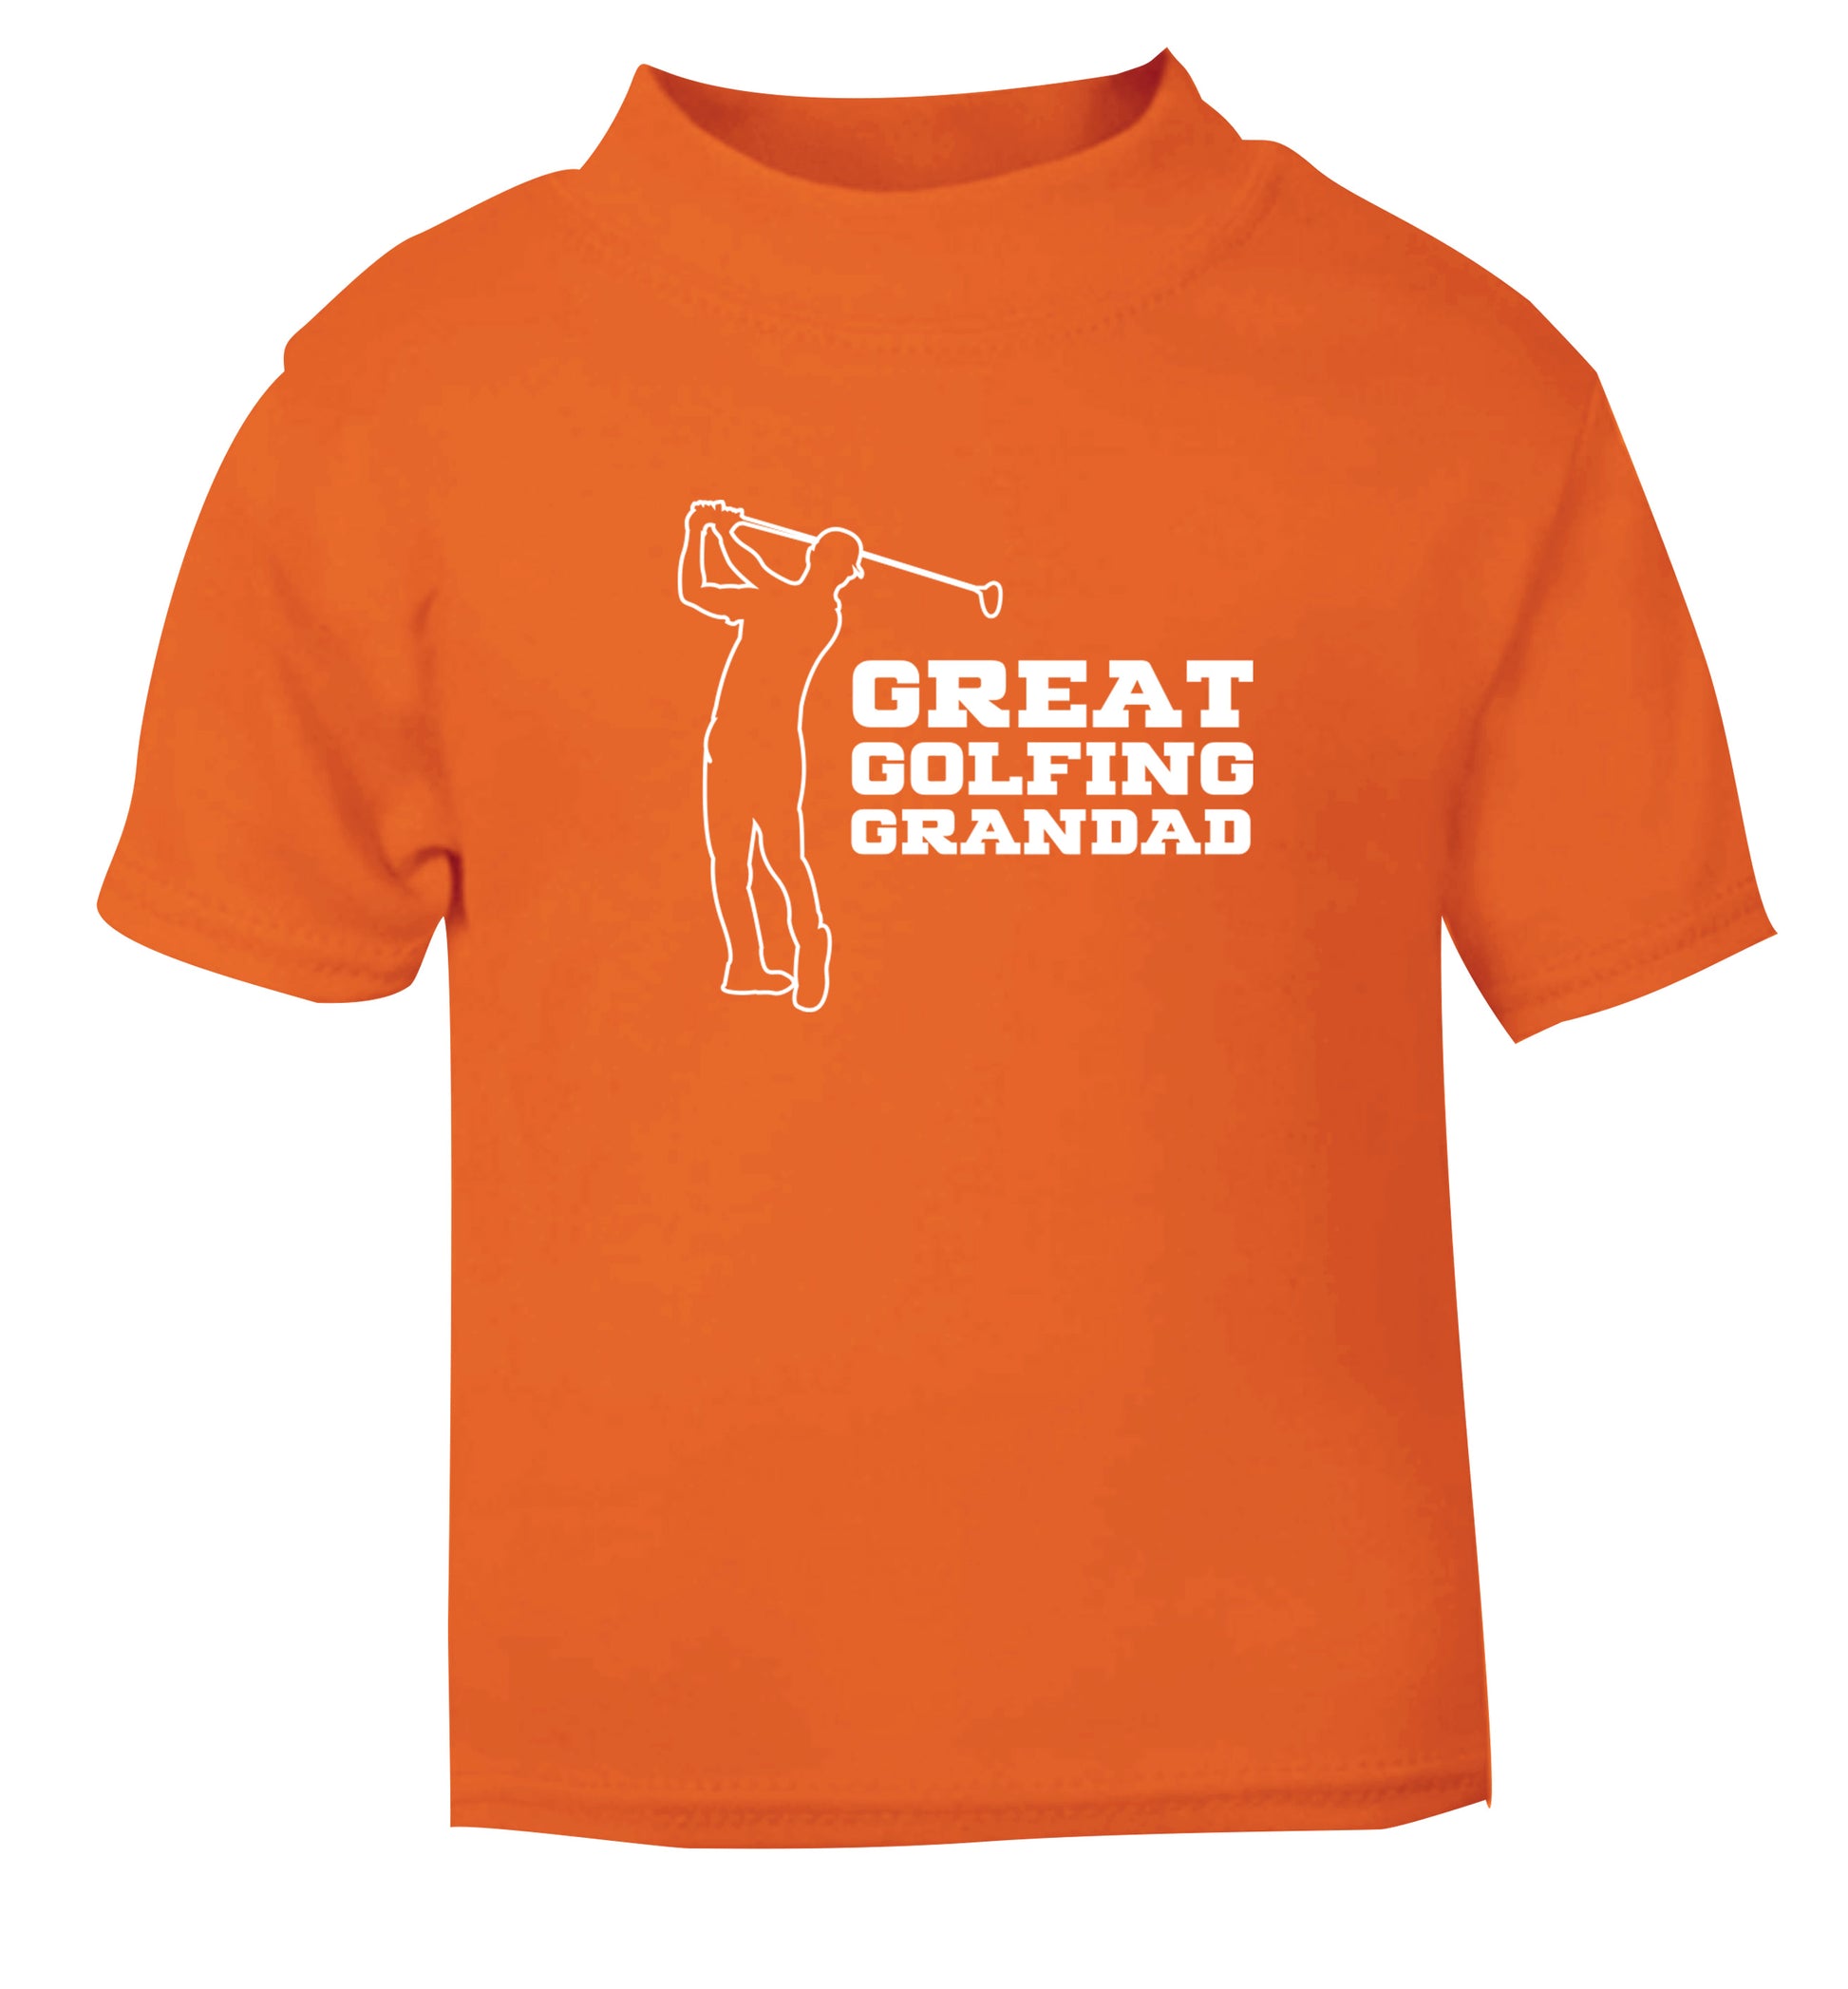 Great Golfing Grandad orange Baby Toddler Tshirt 2 Years